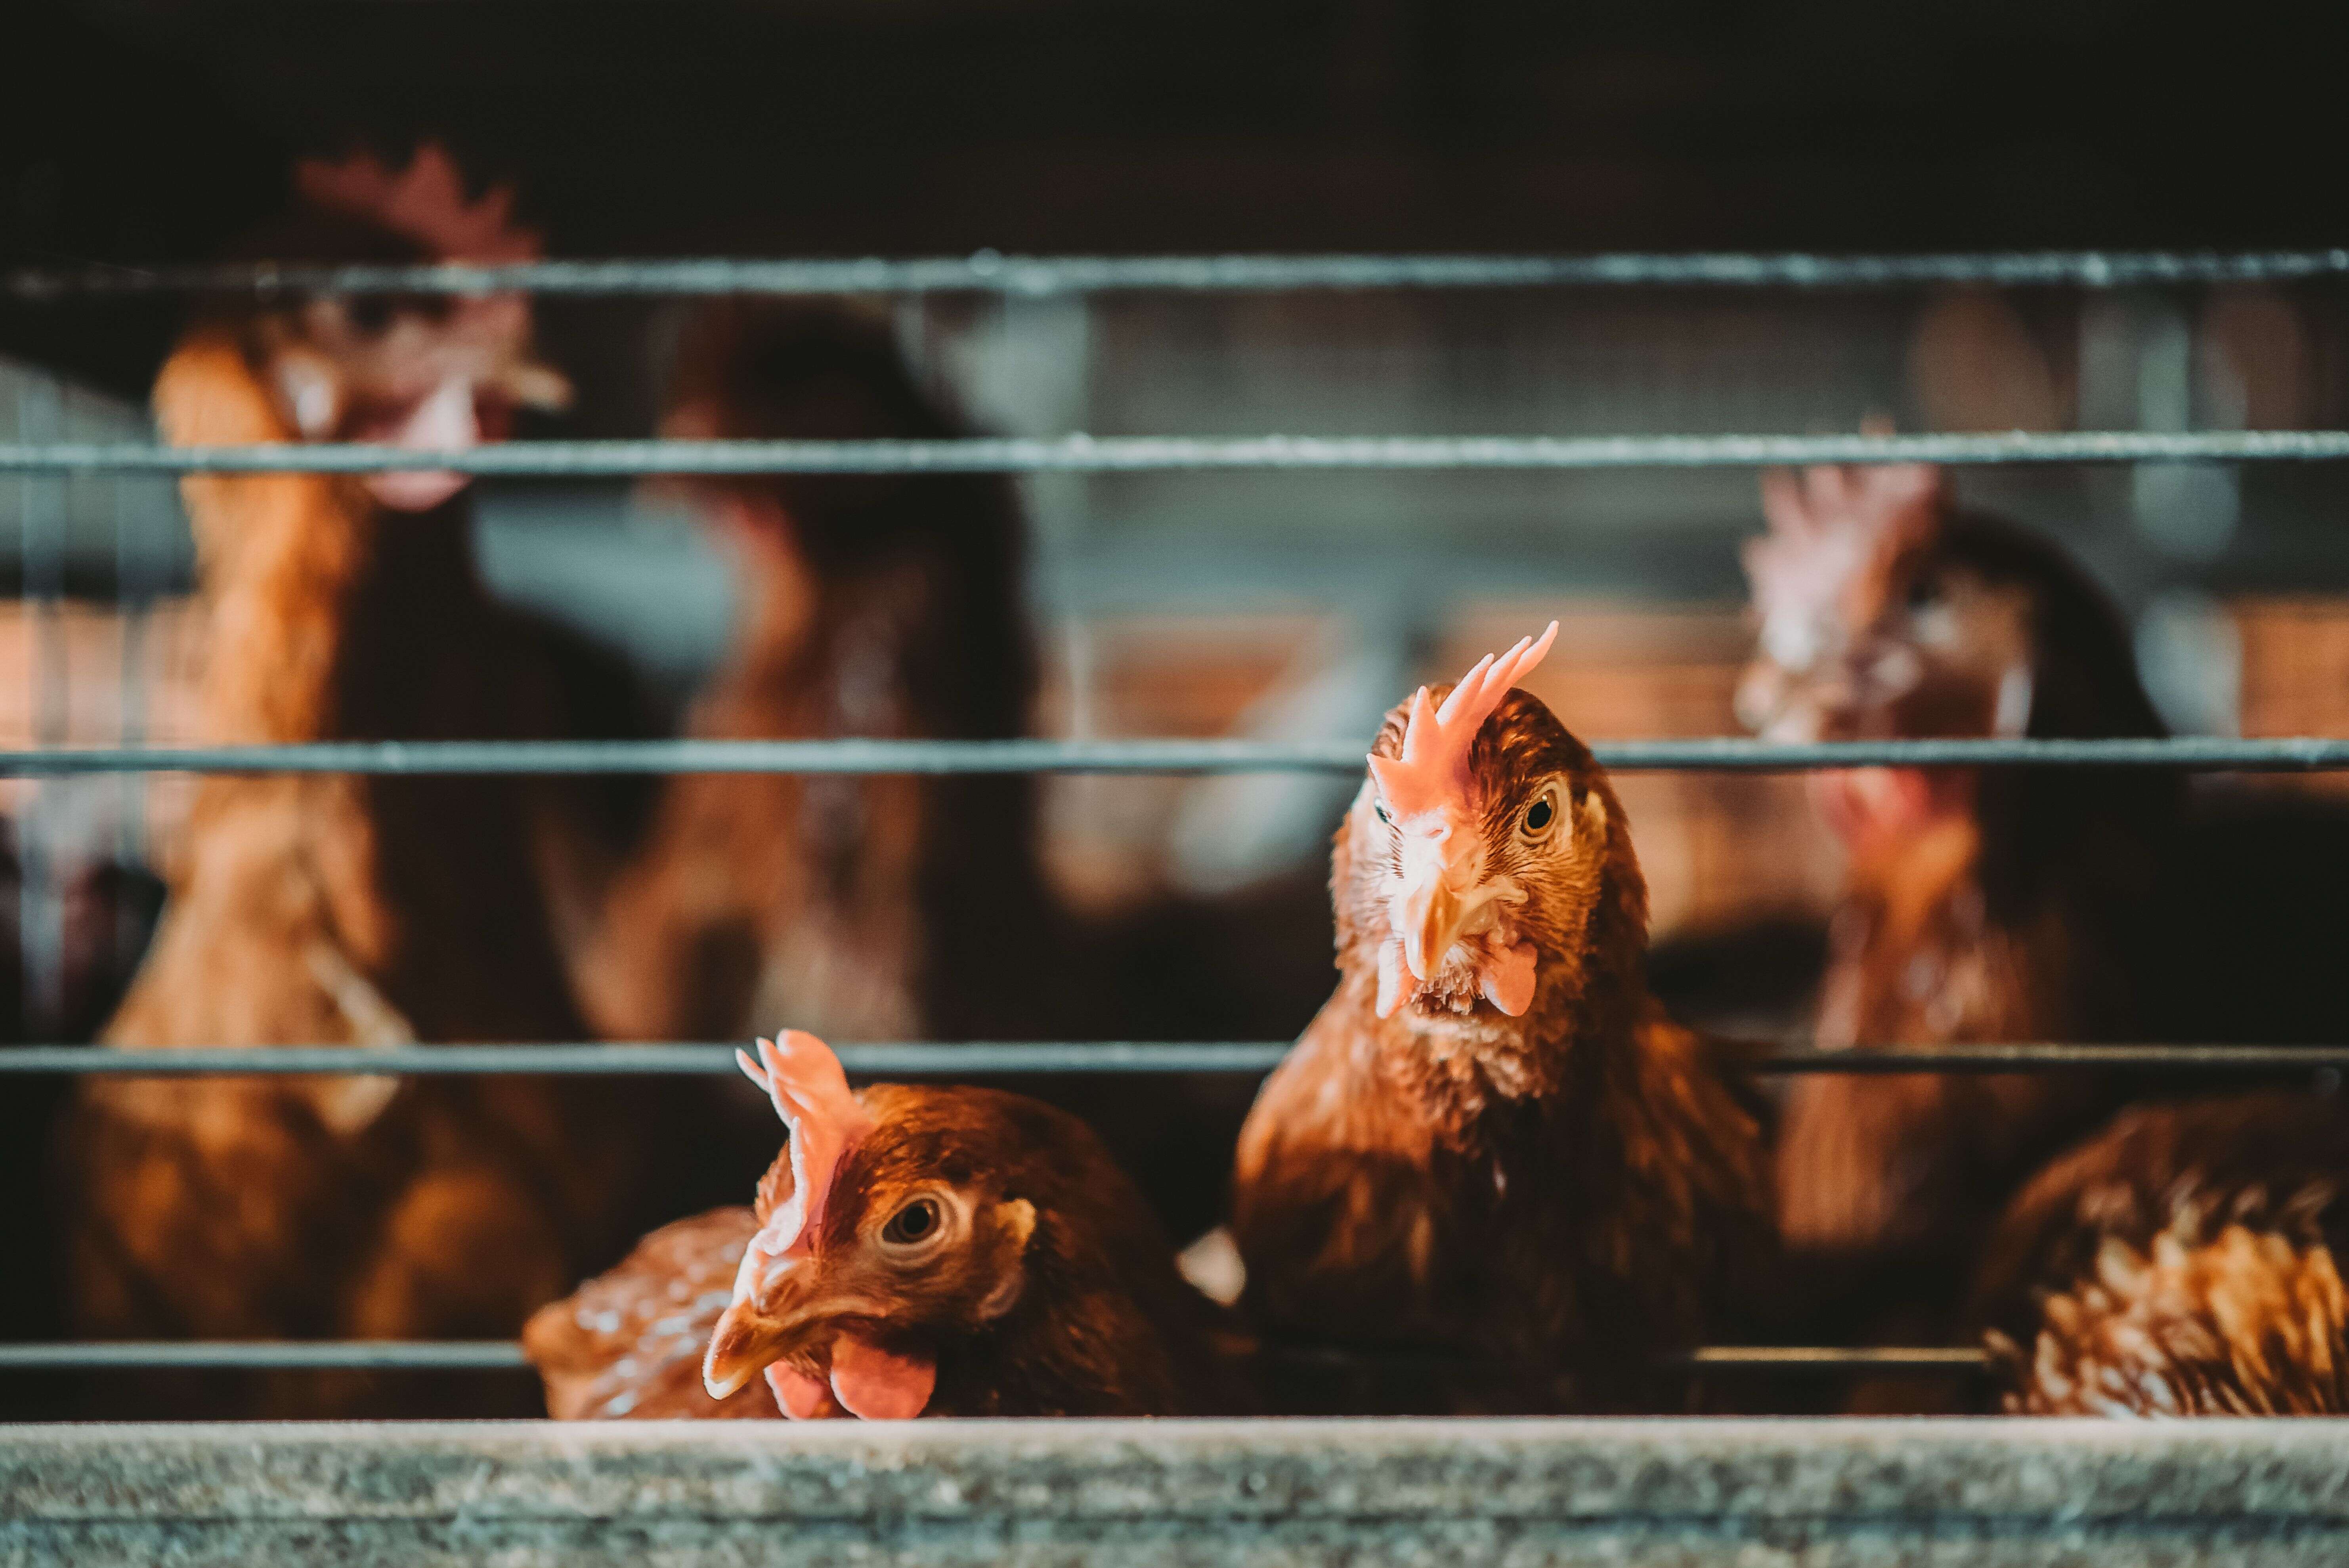 L'association L214 a dénoncé un élevage de poules des Deux-Sèvres, évoquant des 